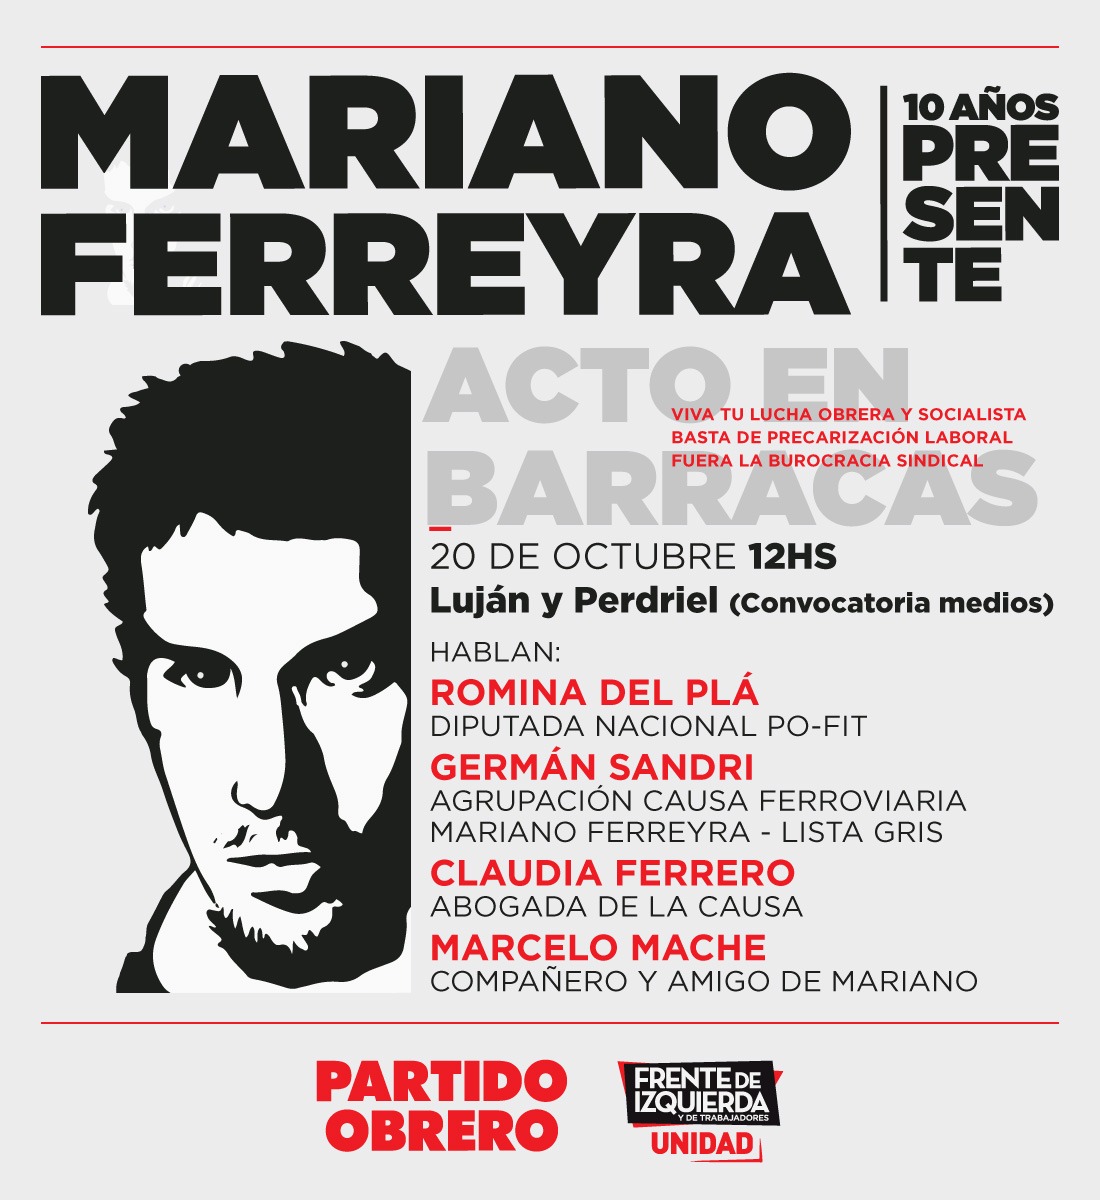 Martes, 12h, acto a 10 años del crimen de Mariano Ferreyra en Luján y Perdriel, Barracas